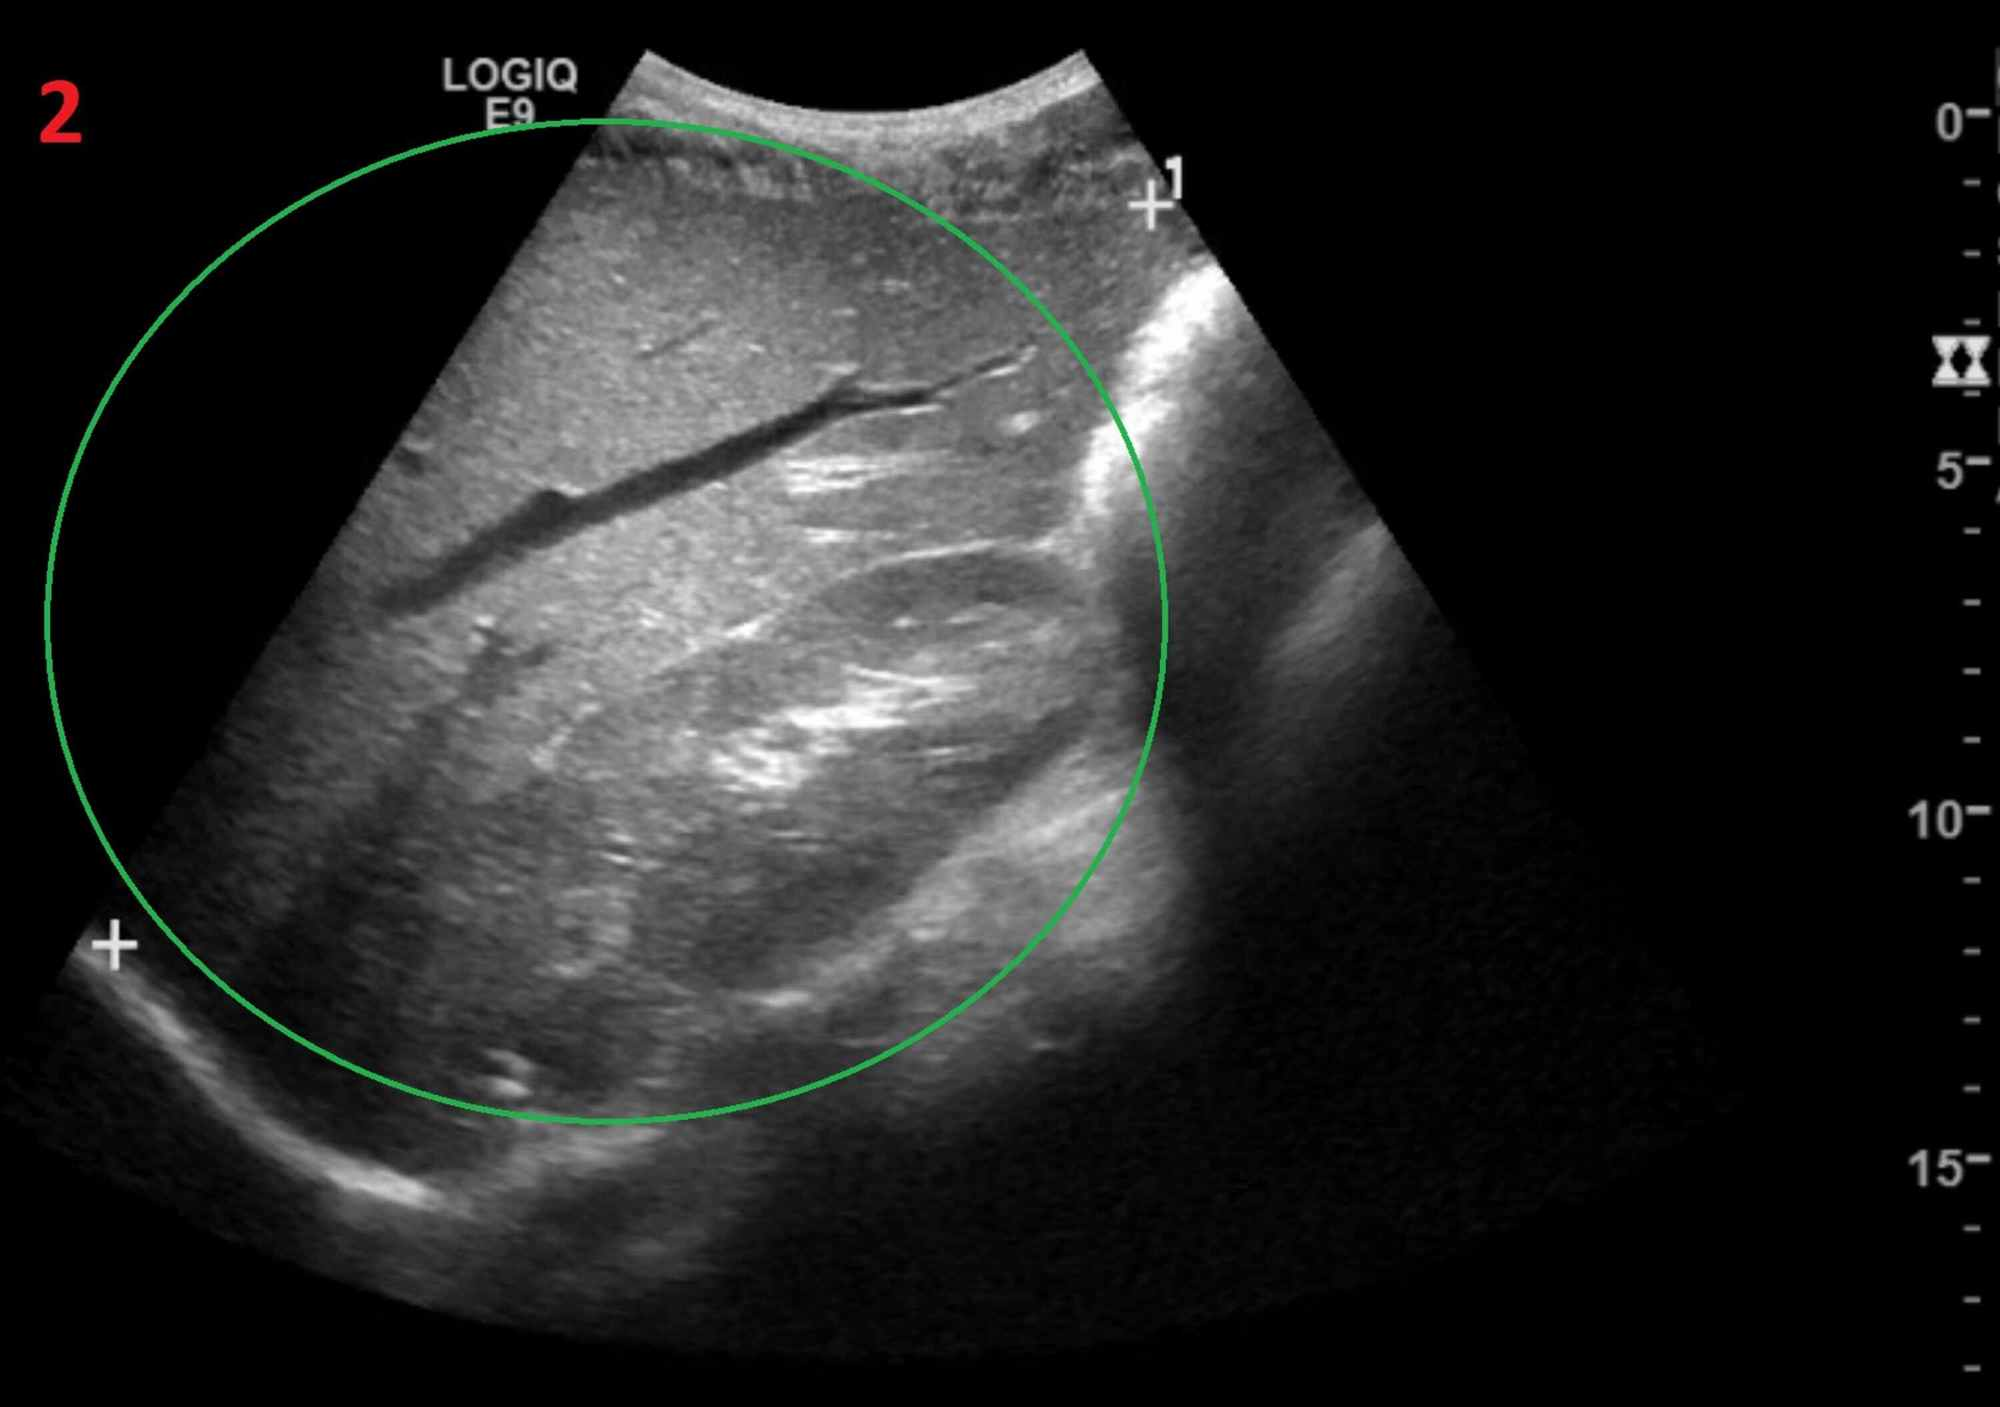 Enlarged Liver Ultrasound